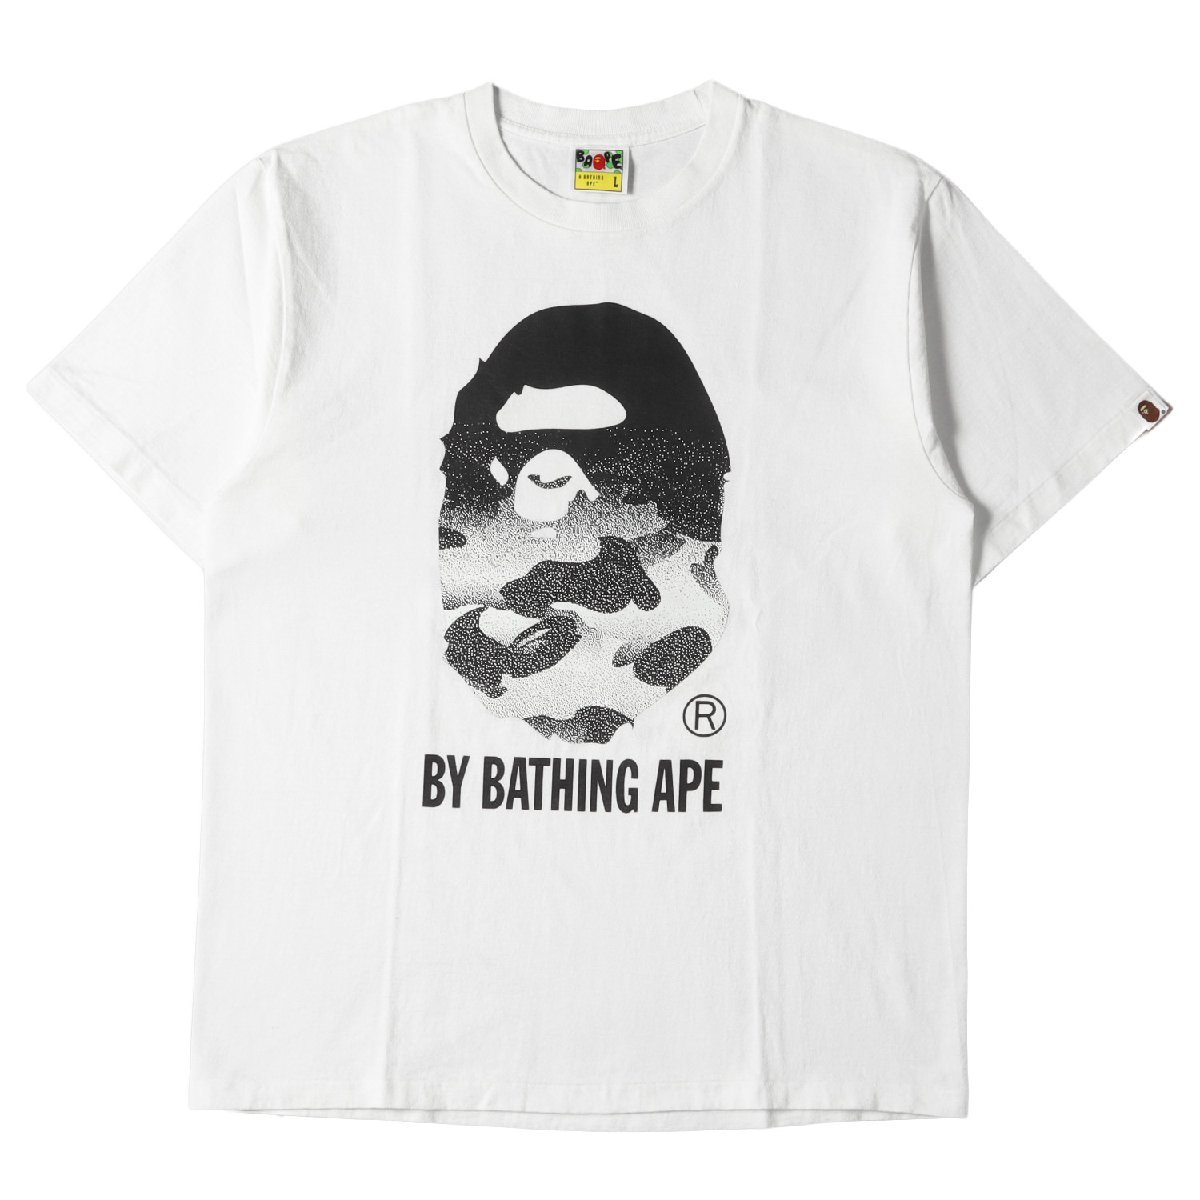 A BATHING APE ア ベイシング エイプ Tシャツ サイズ:L グラデーションカモ ビッグ 猿顔 クルーネック Tシャツ ホワイト 白 トップス